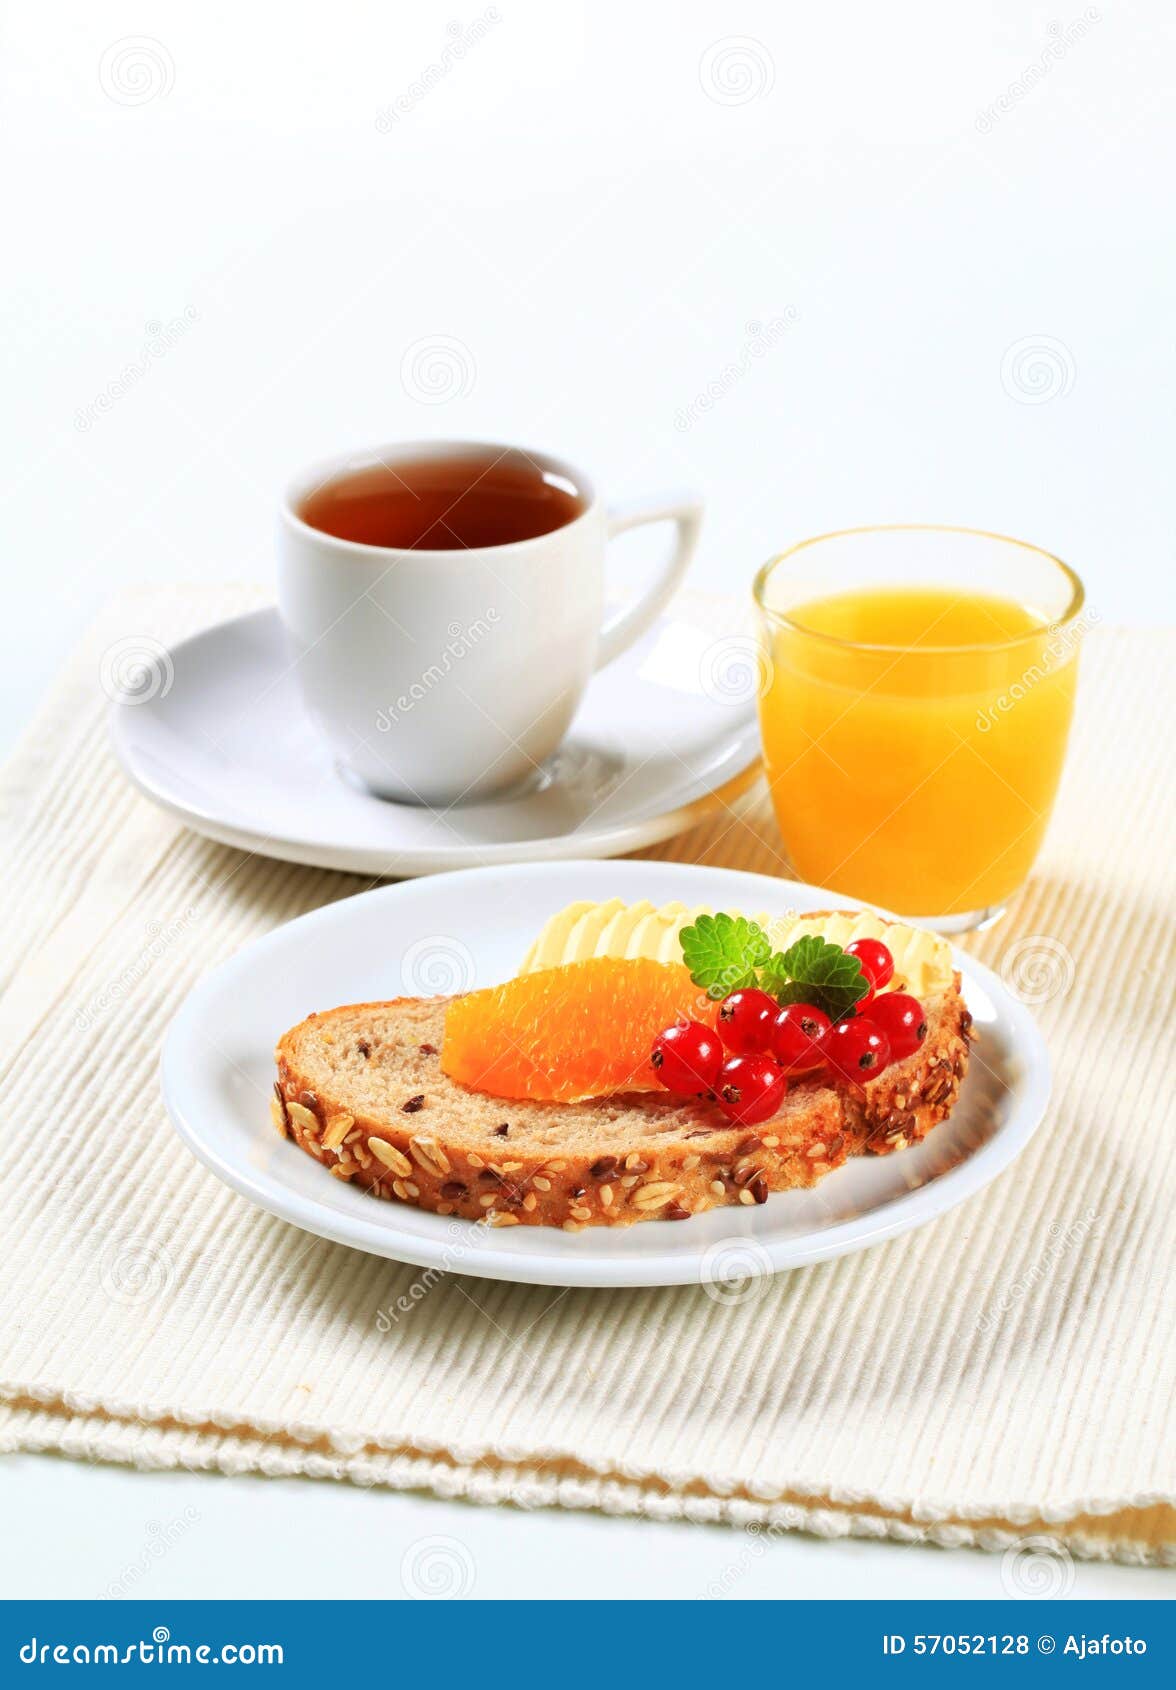 Bröd med smör, kopp te och orange fruktsaft. Bröd med smör och frukt, kopp te och orange fruktsaft